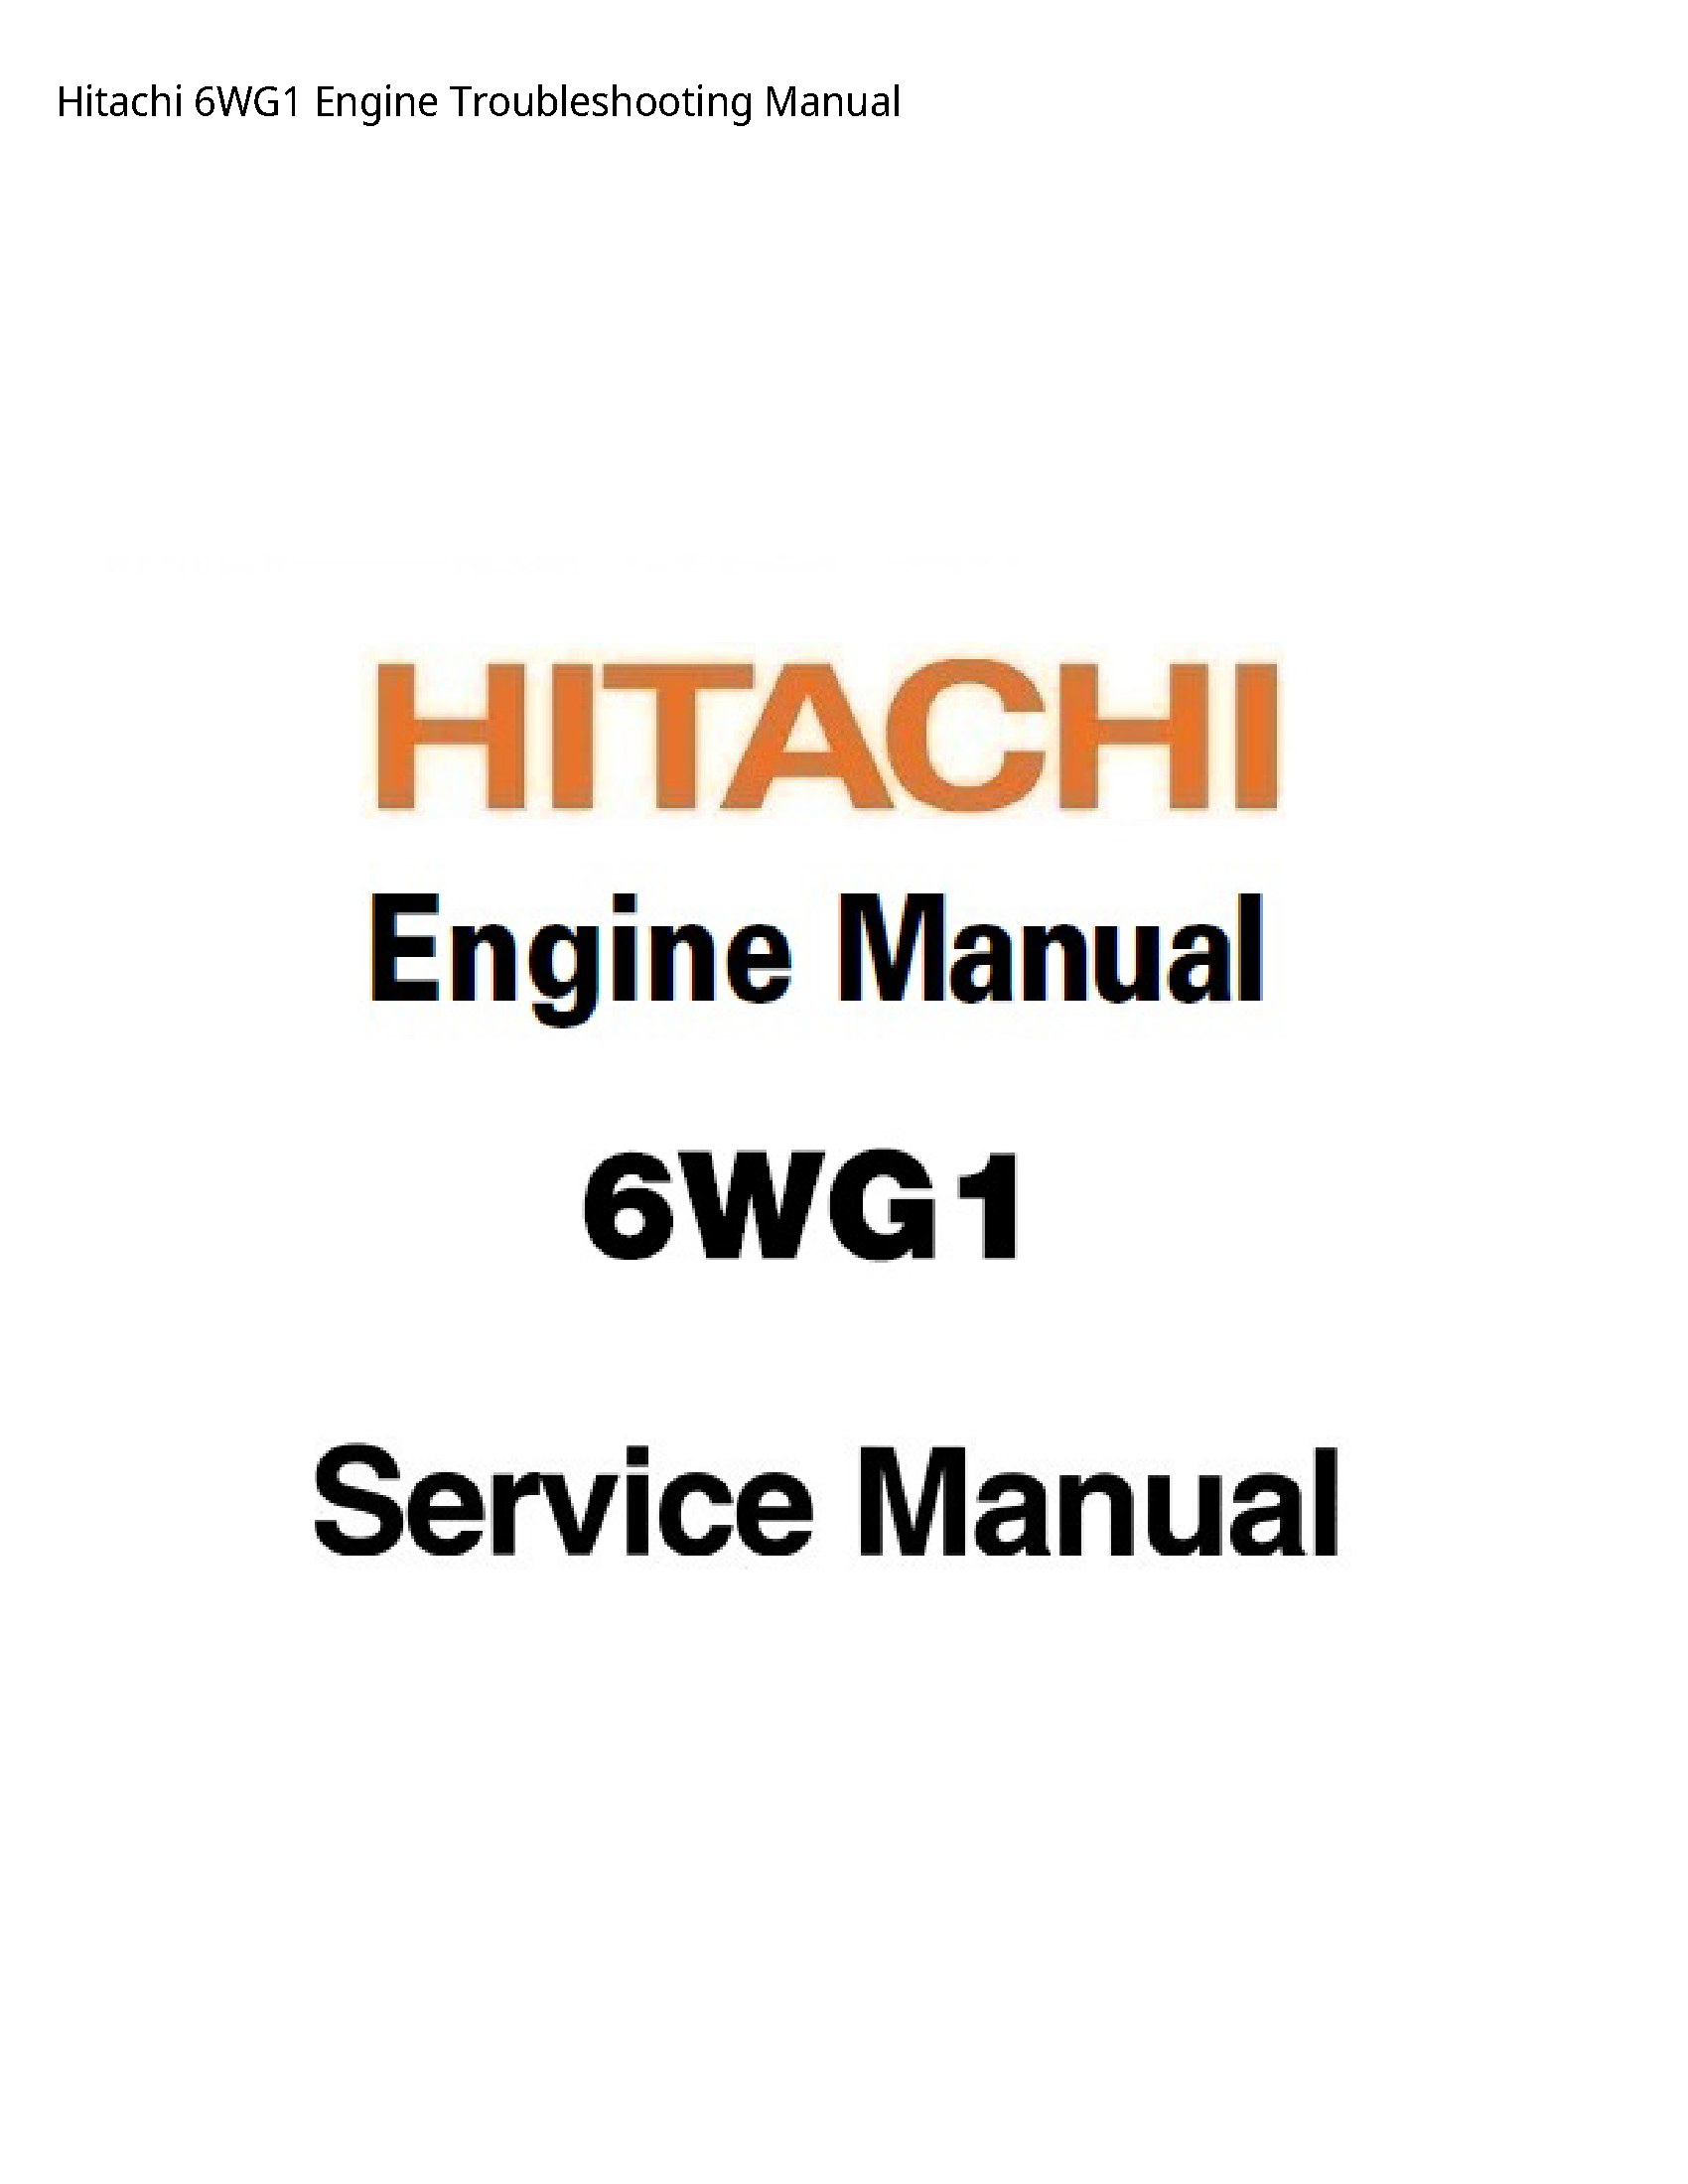 Hitachi 6WG1 Engine Troubleshooting manual